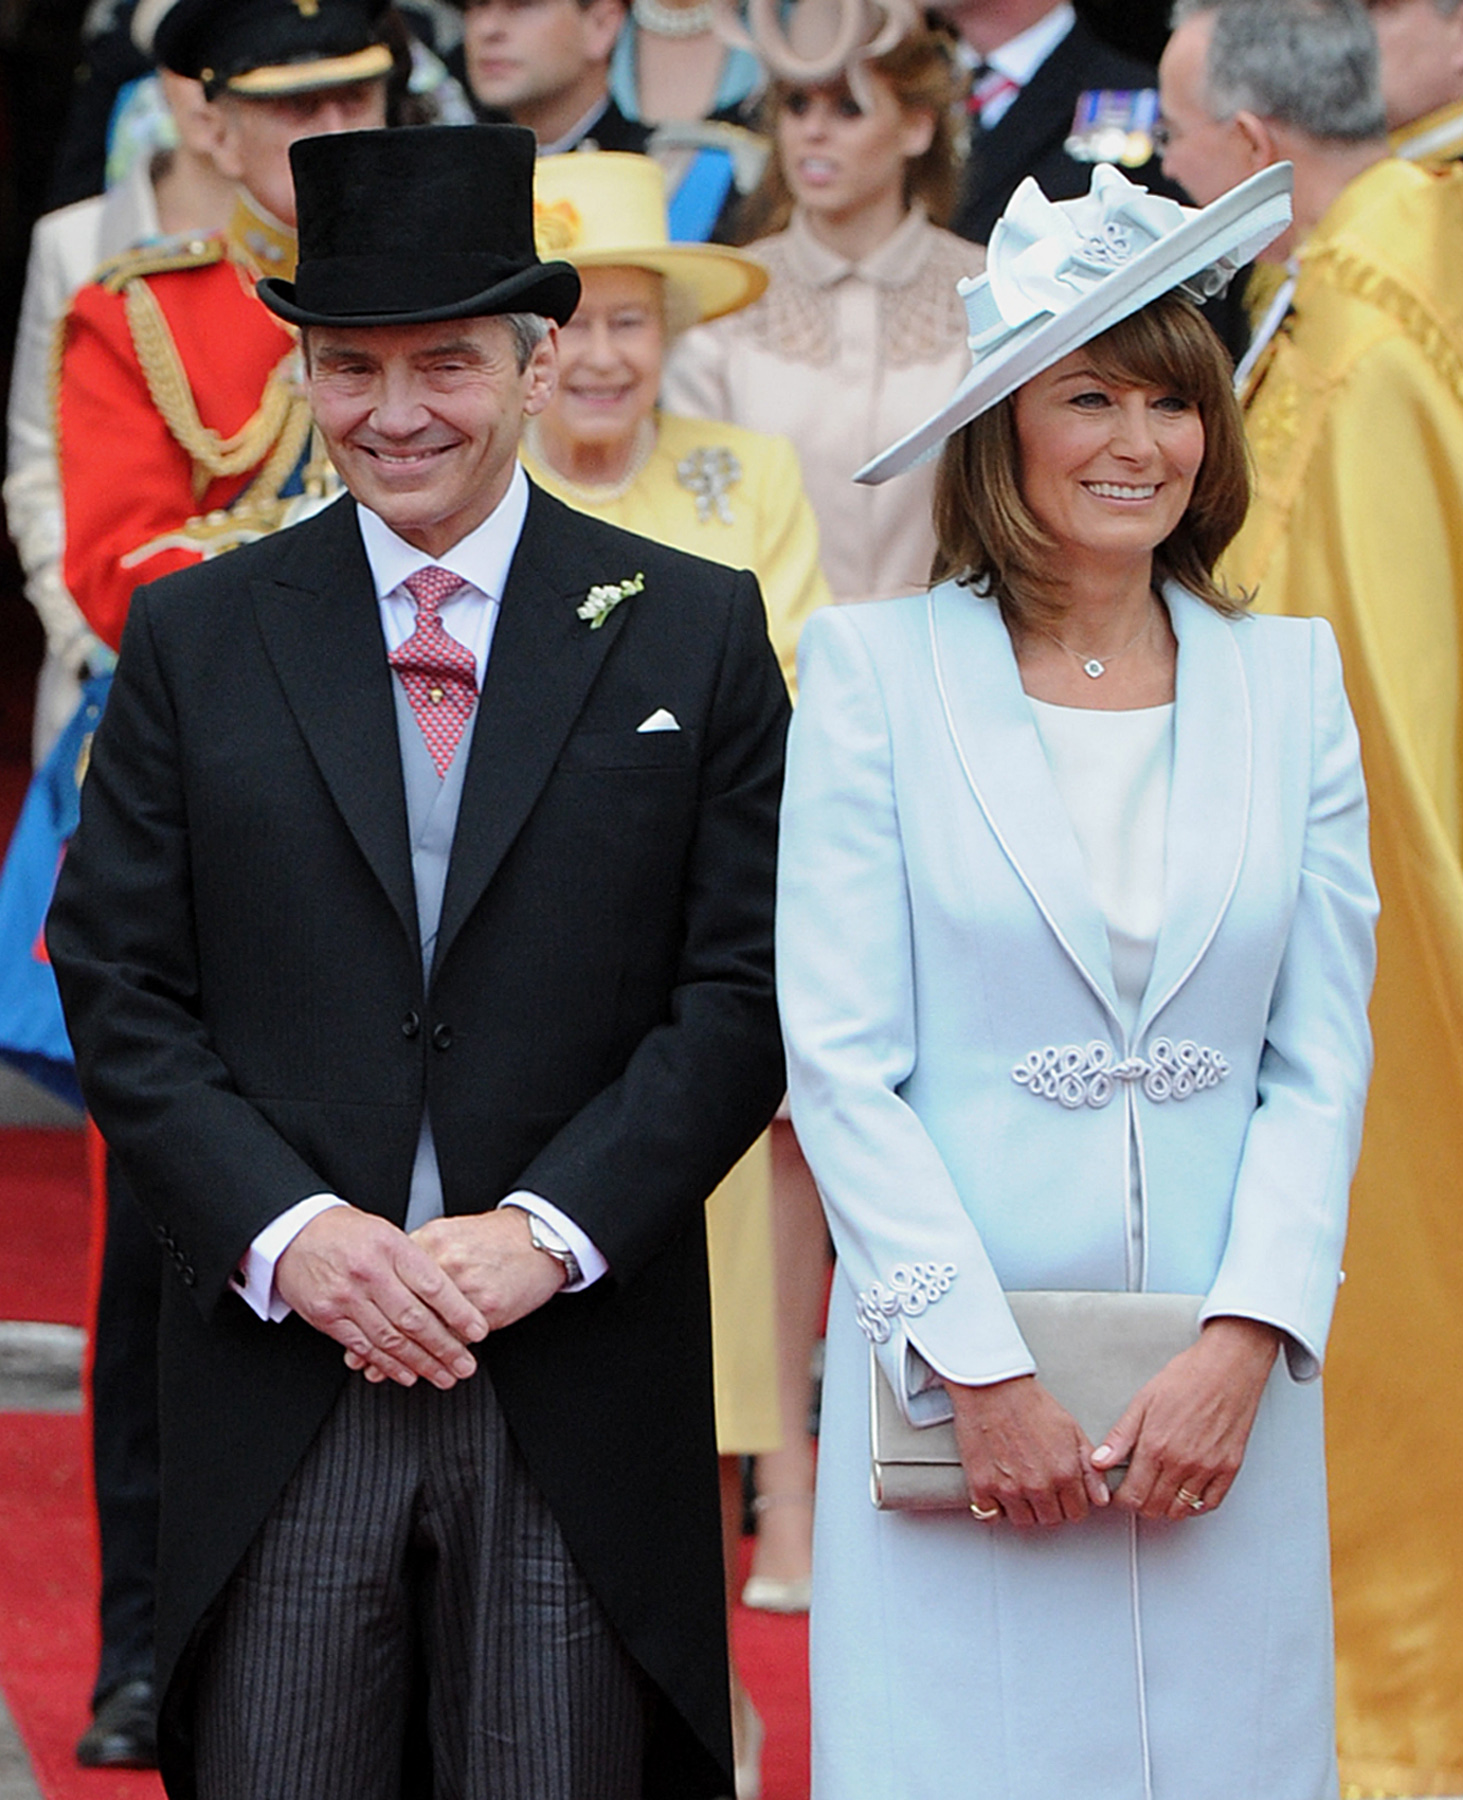 Michael und Carole Middleton verlassen die Westminster Abbey in London nach der Hochzeitszeremonie des britischen Prinzen William und ihrer Tochter am 29. April 2011. | Quelle: Getty Images